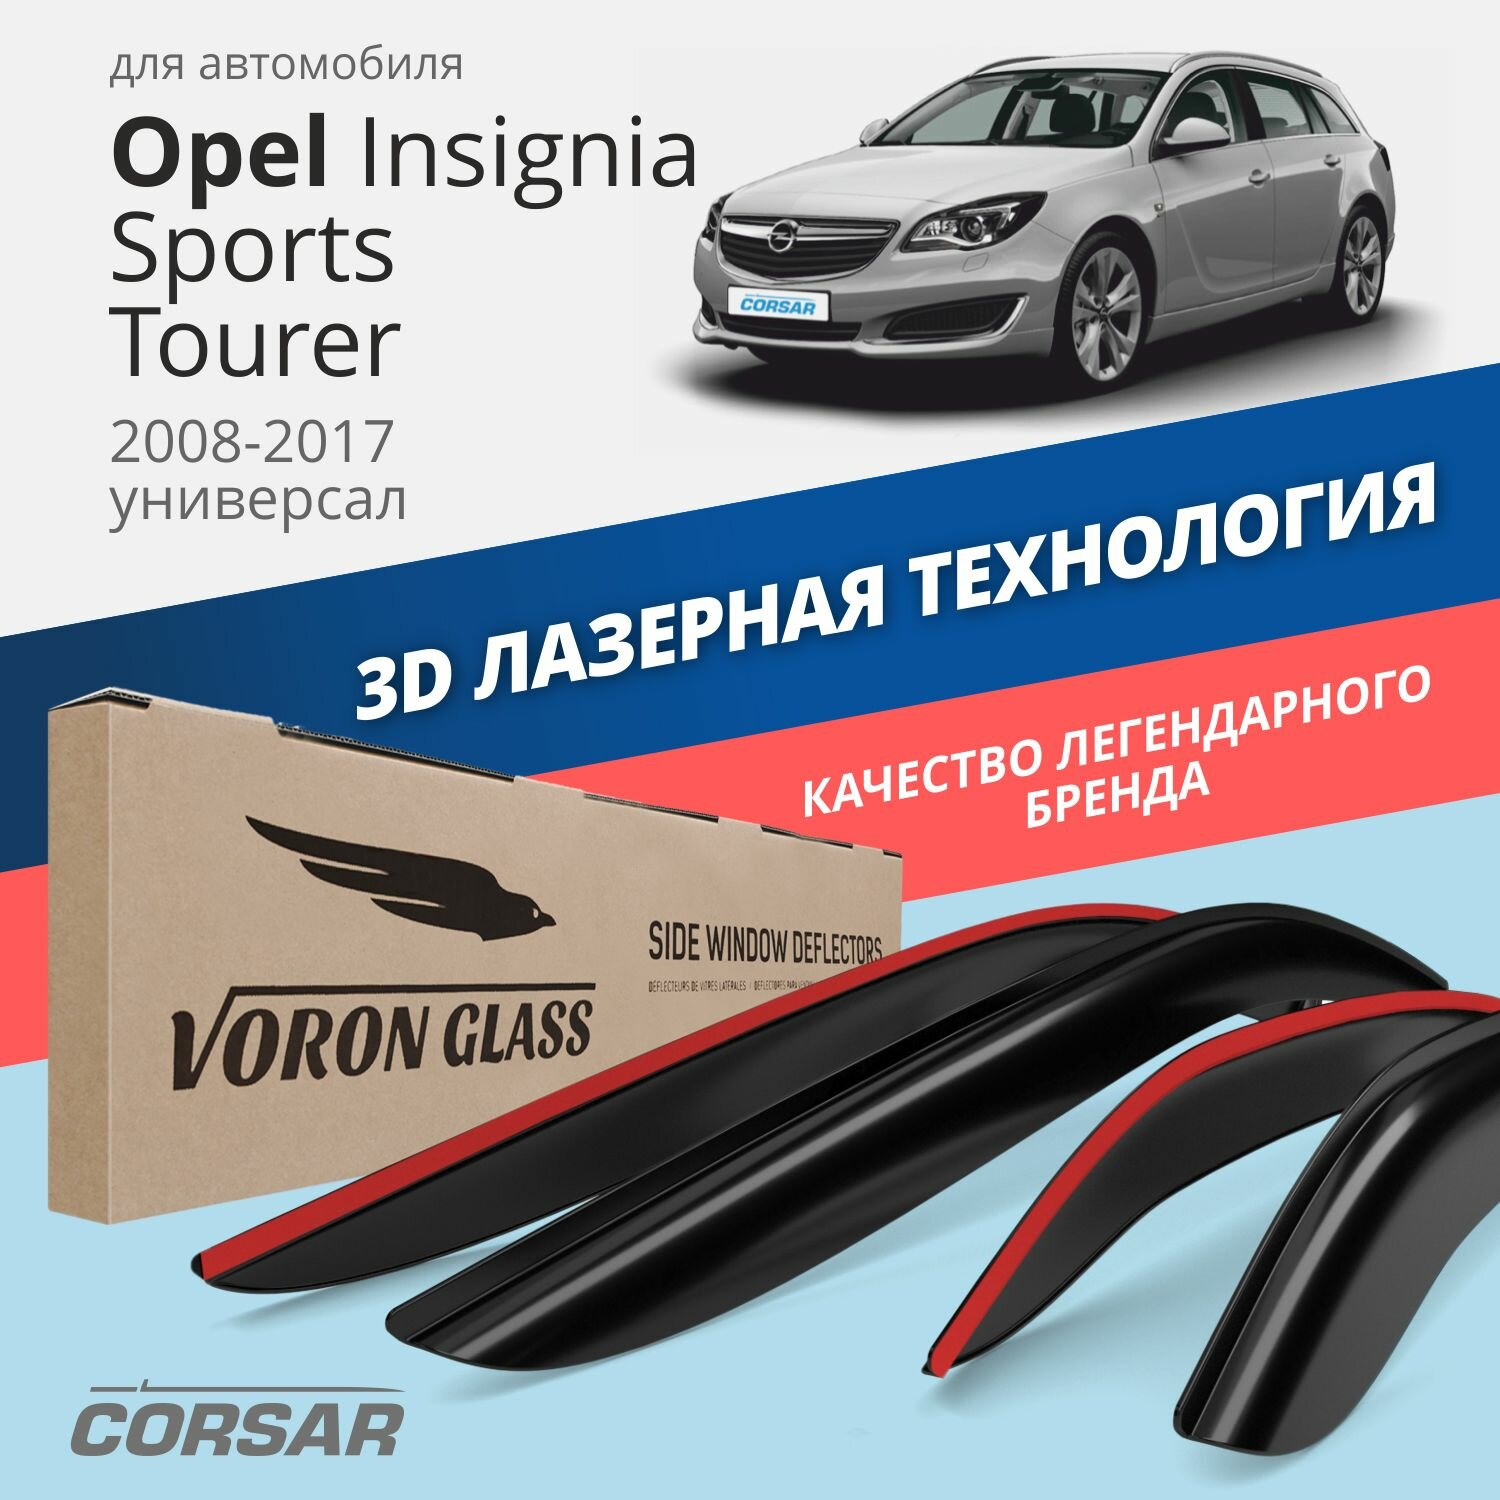 Дефлекторы На Боковые Стекла Voron Glass Серия Corsar Opel Insignia Sports Tourer 2008-2017/Универса AZARD арт. DEF00577